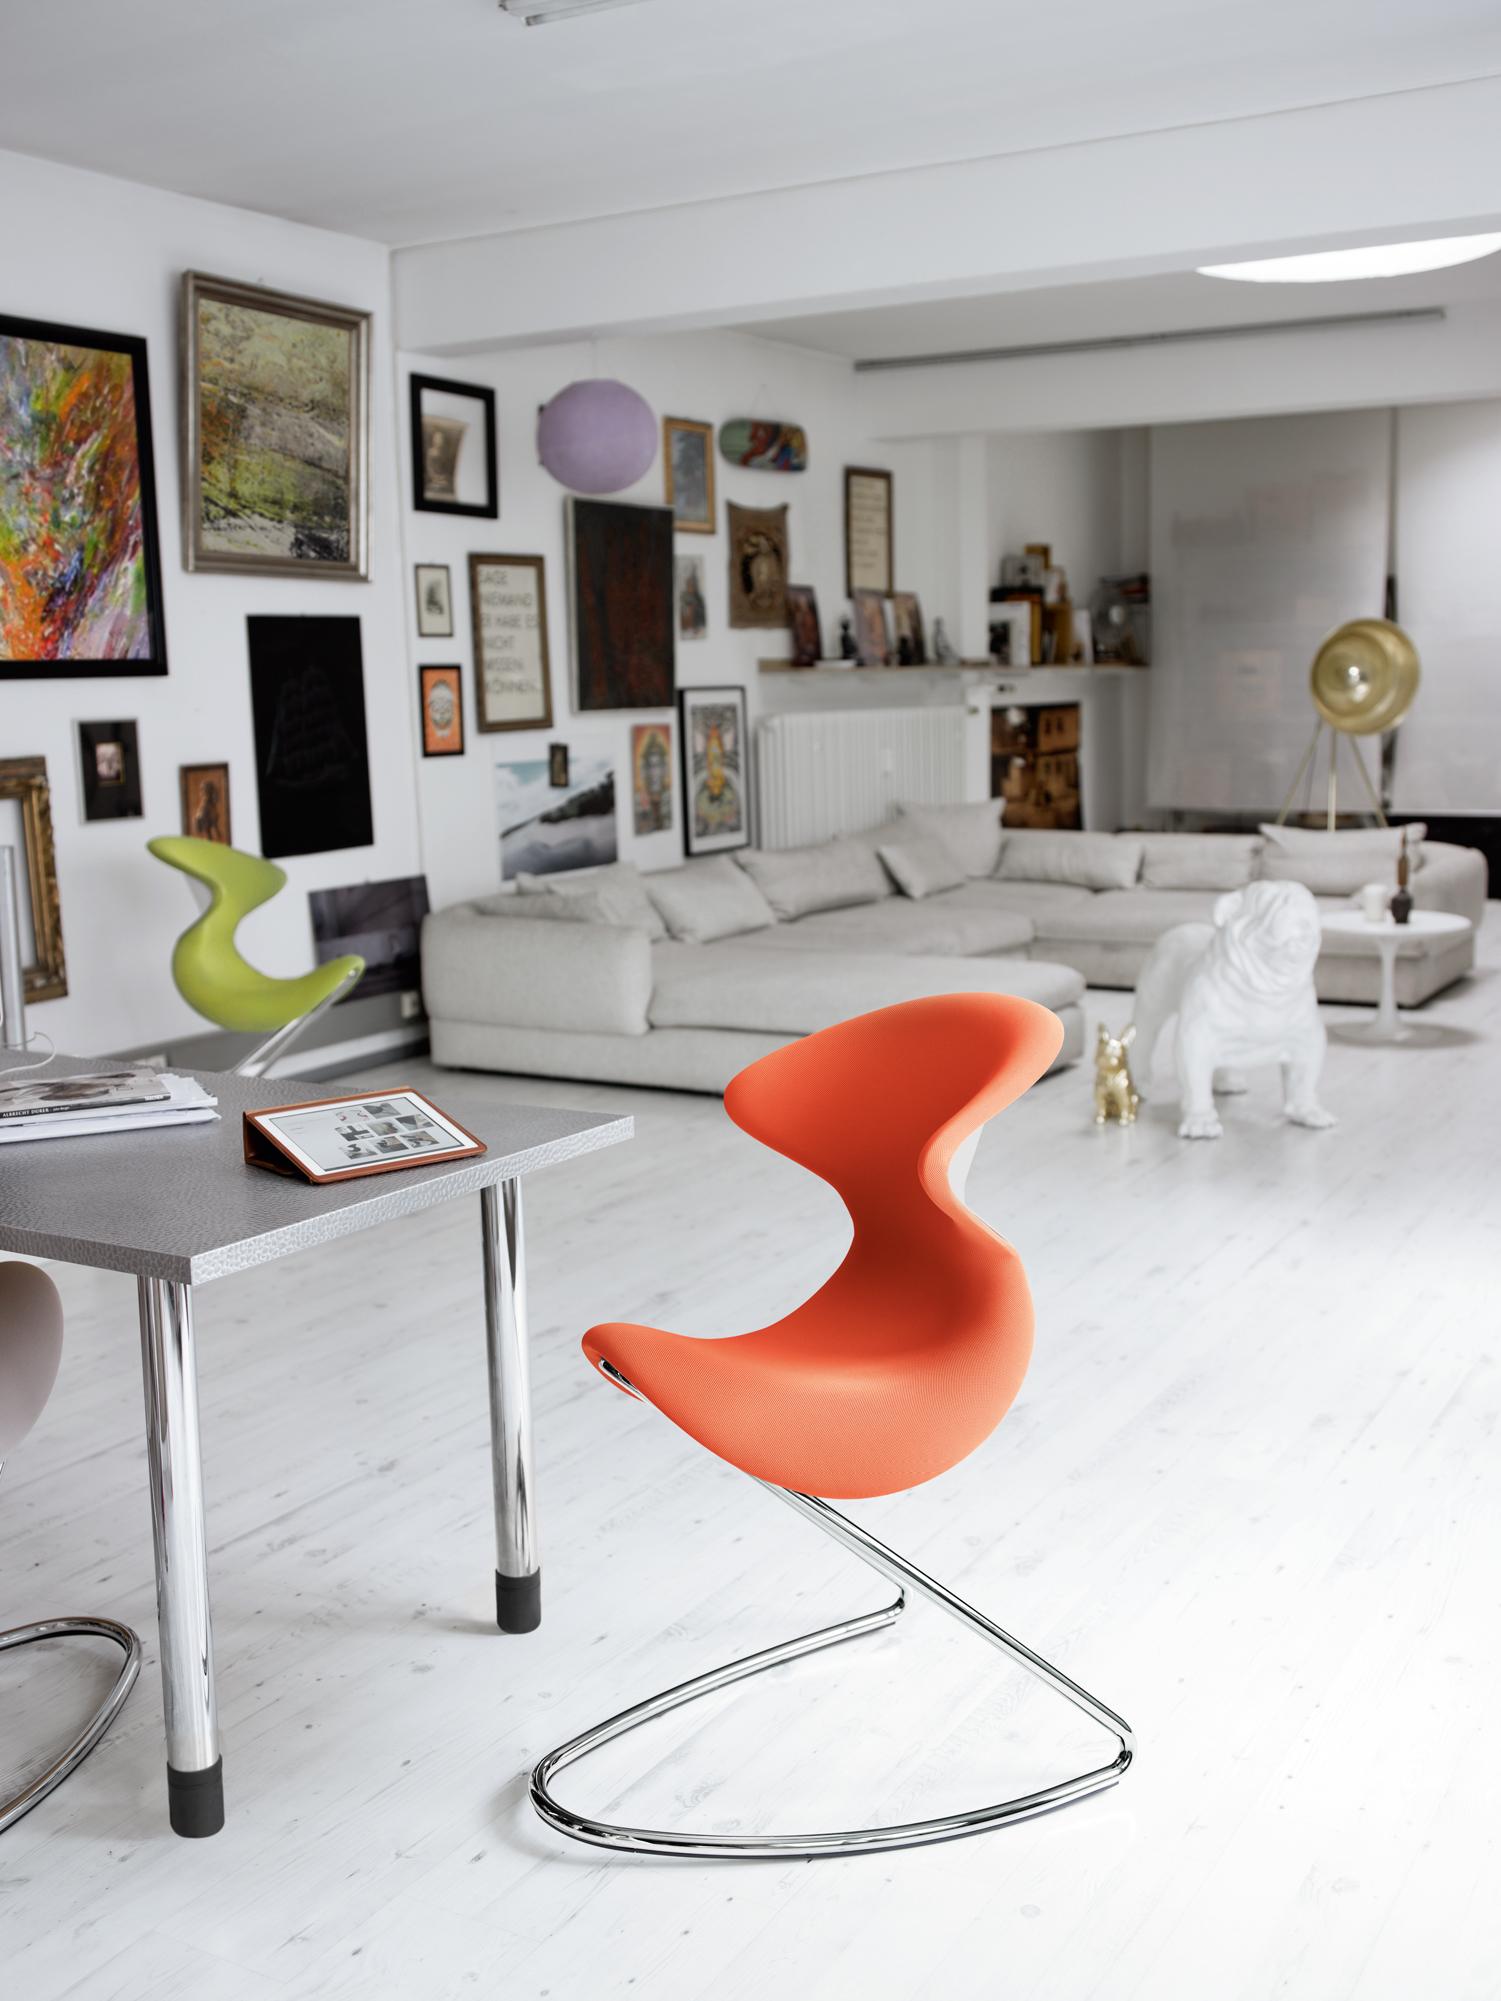 Modernes Wohnzimmer für Hundeliebhaber #bürostuhl #zimmergestaltung ©aeris GmbH, Fotograf: Thomas Jape